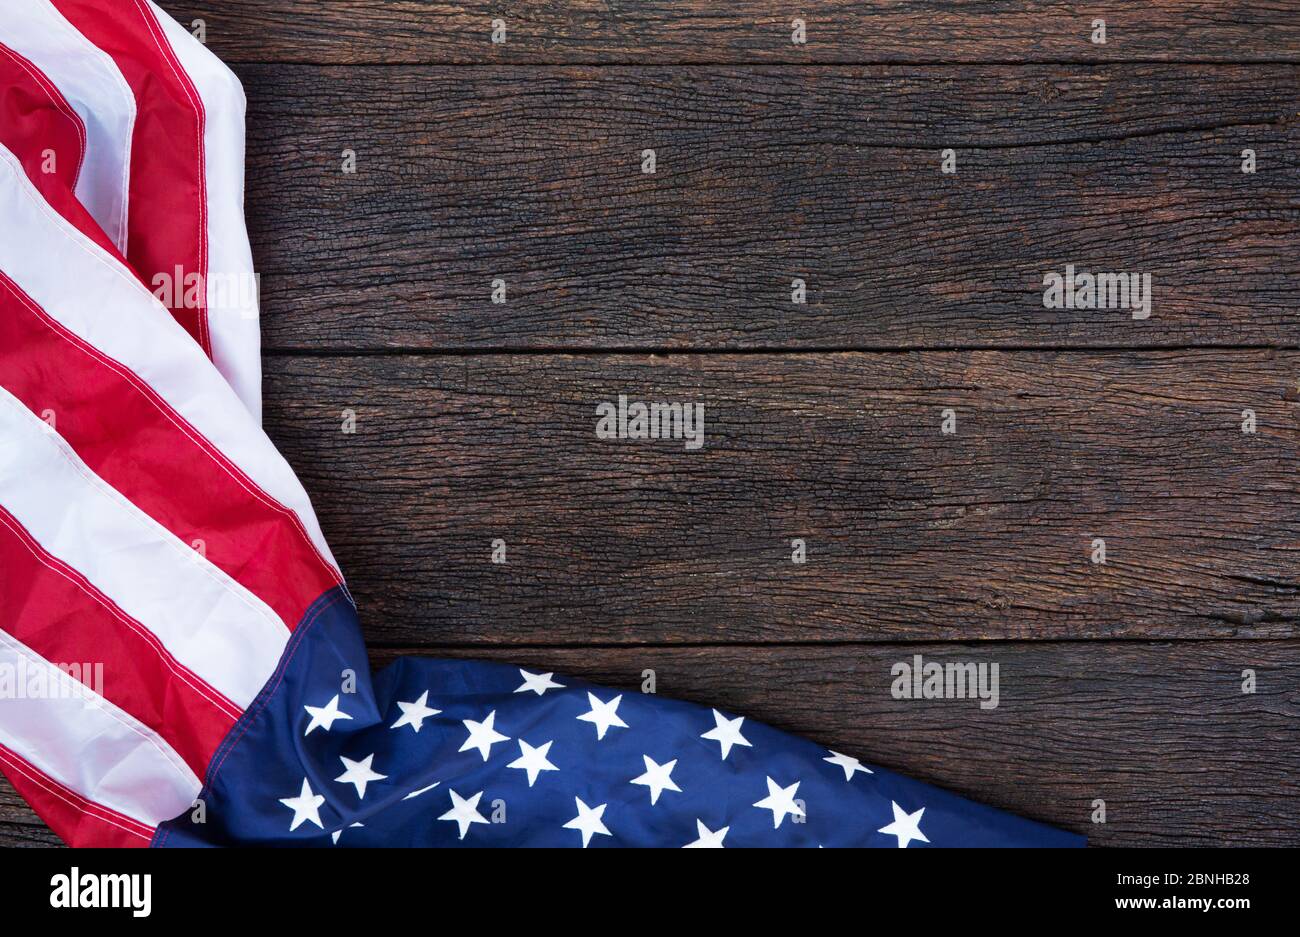 Amerika Flagge winken Muster auf Holzhintergrund in Tischansicht, rot blau weiß Streifen Konzept für USA 4. juli Unabhängigkeitstag, Symbol des Patrioten Stockfoto